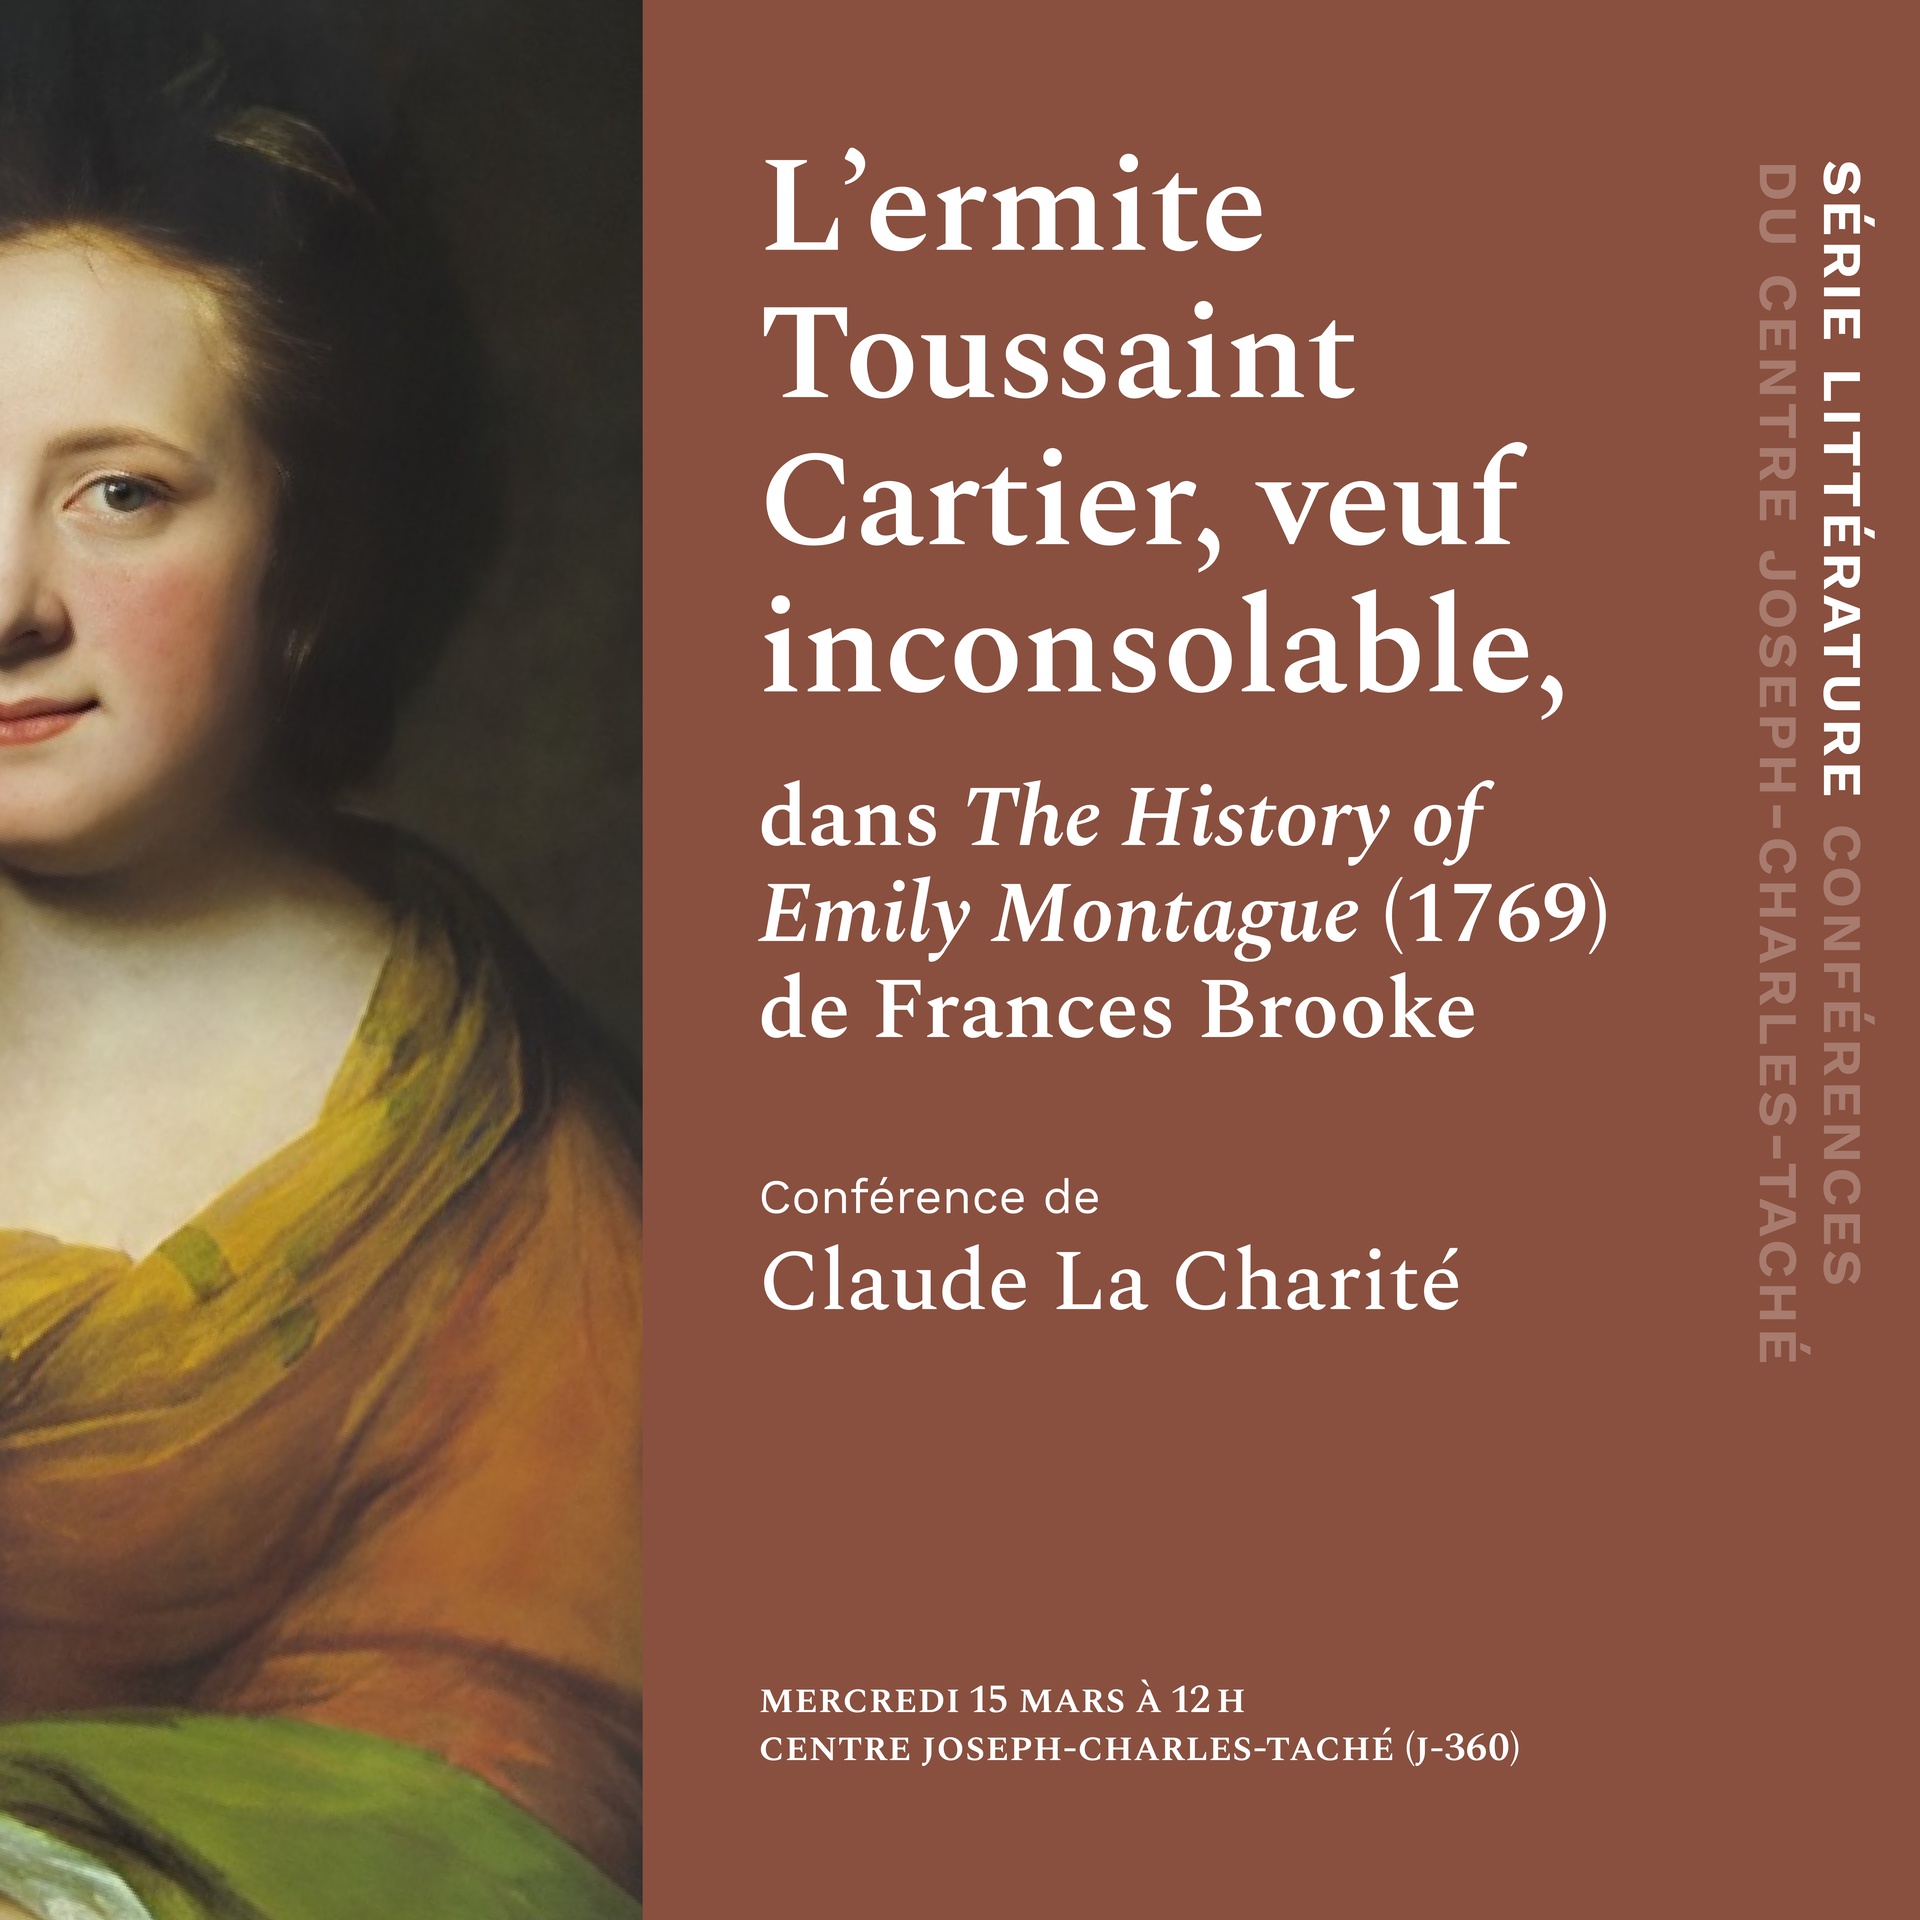 Conférence | L’ermite Toussaint Cartier, veuf inconsolable, dans « The History of Emily Montague » (1769) de Frances Brooke